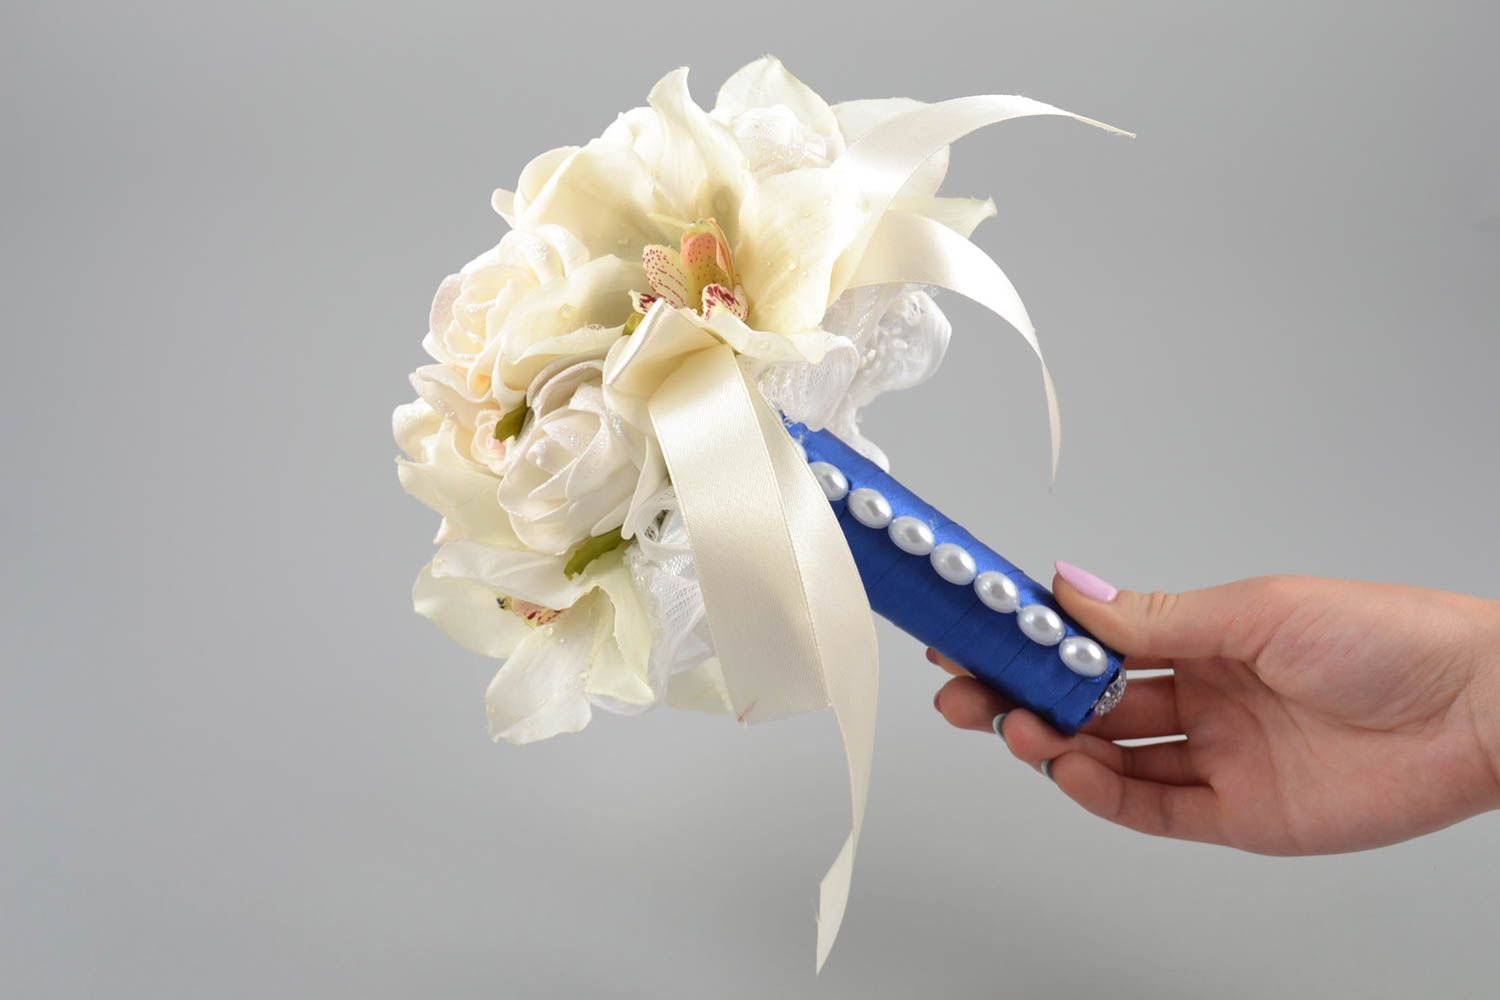 Свадебный букет из фоамирана белый на синей ножке красивый с лентами хэнд мейд фото 5